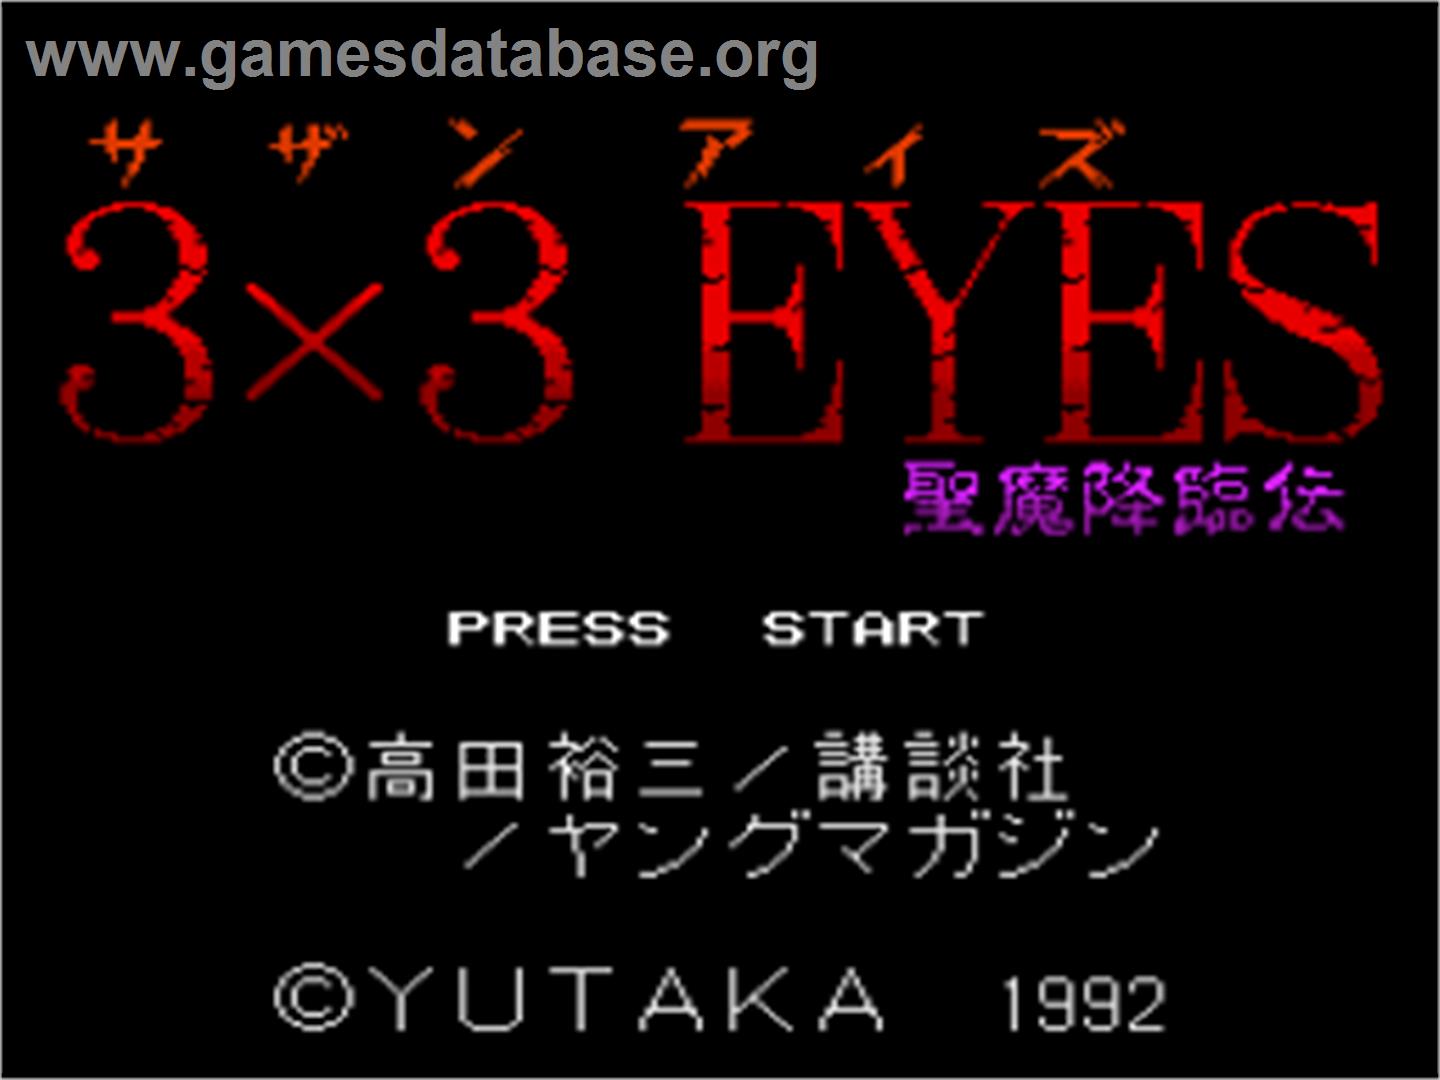 3x3 Eyes: Seima Kourin Den - Nintendo SNES - Artwork - Title Screen